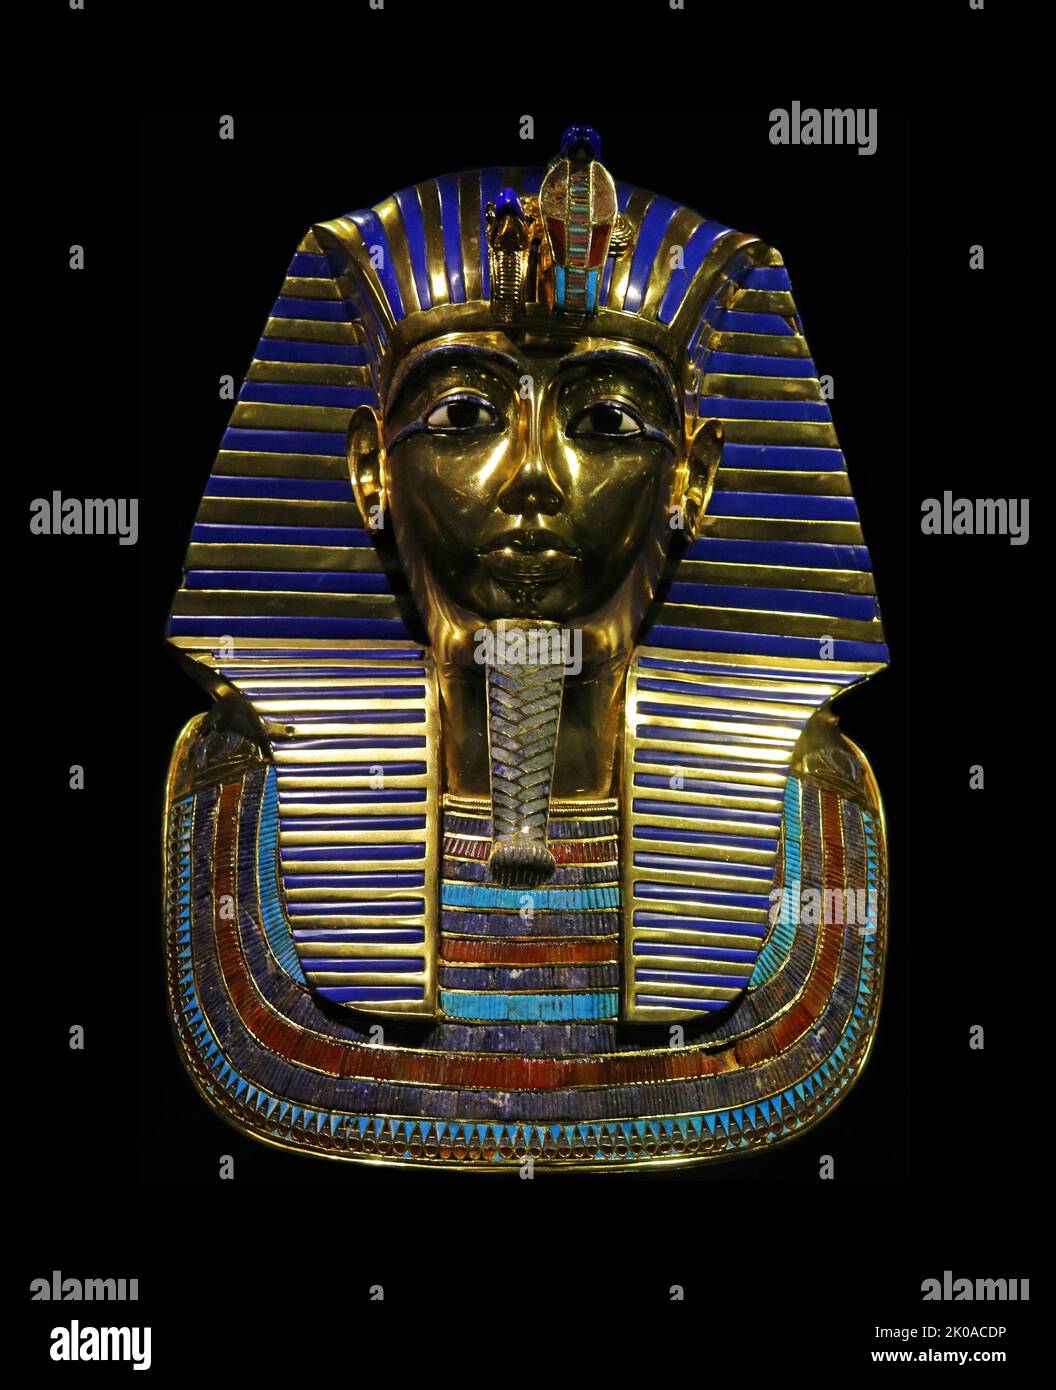 La maschera di Tutankhamon è una maschera d'oro dell'antico faraone egiziano Tutankhamon della dinastia del 18th (regnato nel 1334-1325 a.C.). È stato scoperto da Howard carter nel 1925 nella tomba KV62 nella Valle dei Re, ed è ora ospitato nel Museo Egizio del Cairo. La maschera della morte è una delle opere d'arte più conosciute al mondo e un simbolo importante dell'antico Egitto Foto Stock